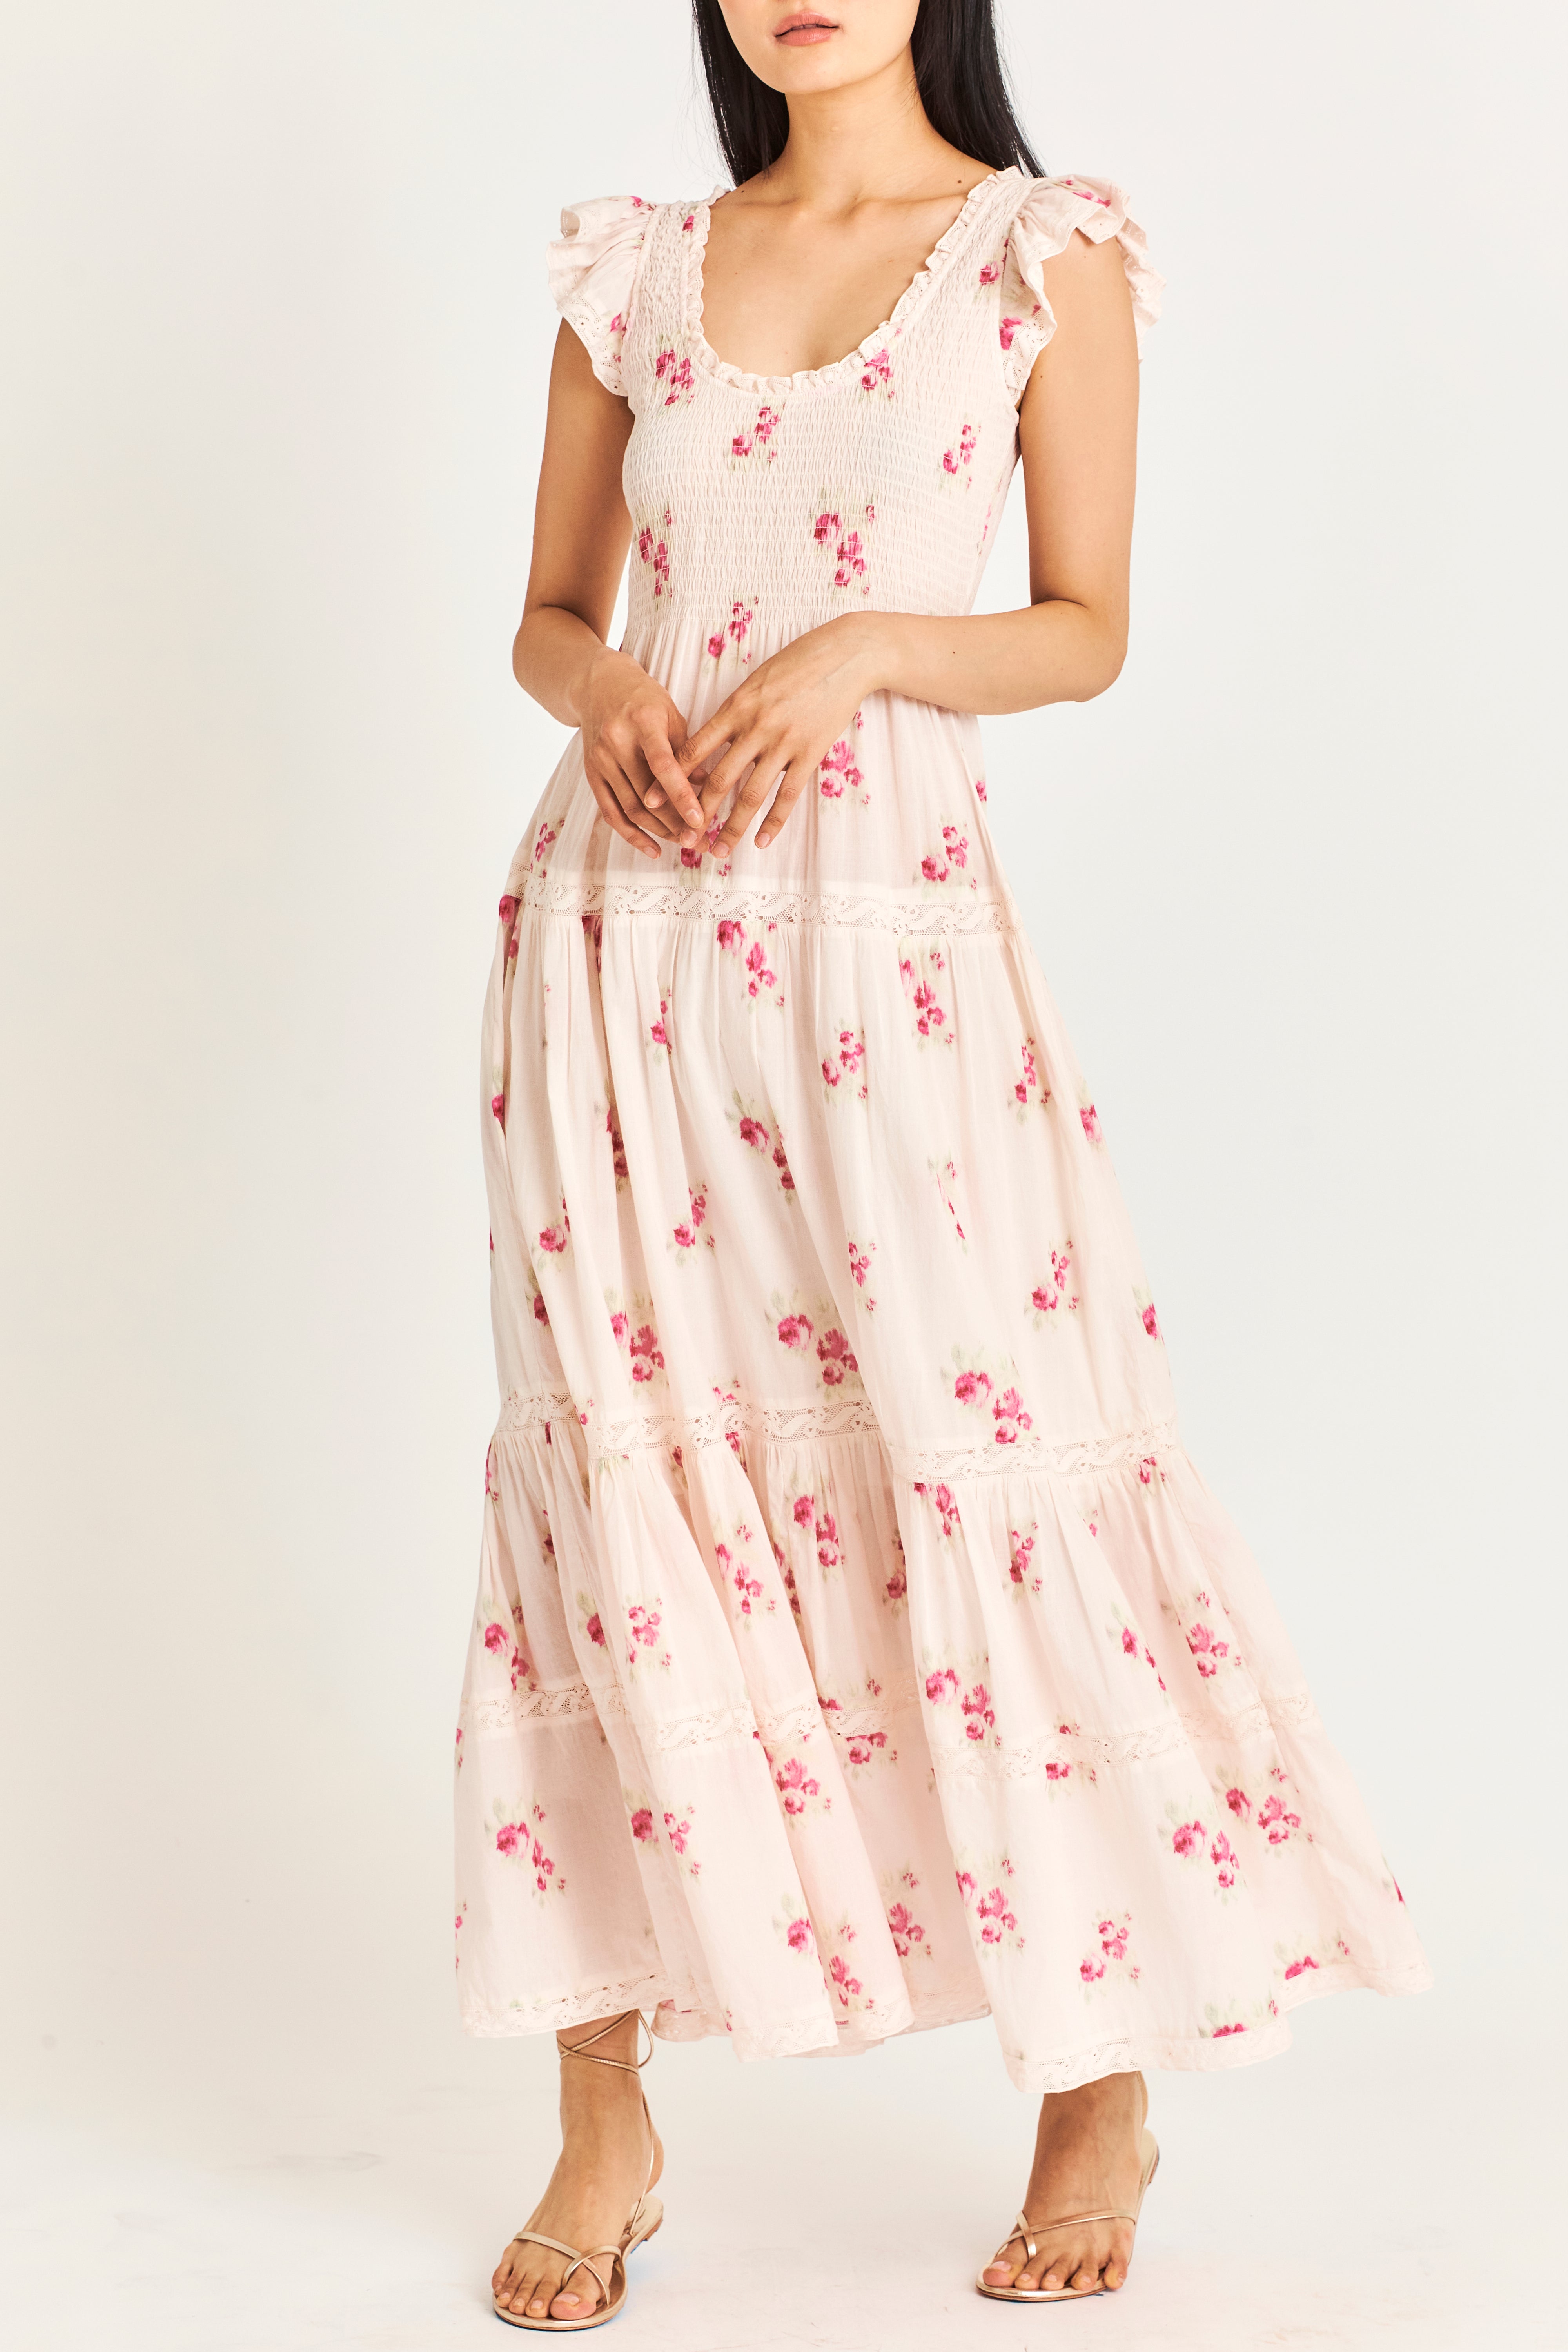 Chessie Floral Maxi Dress